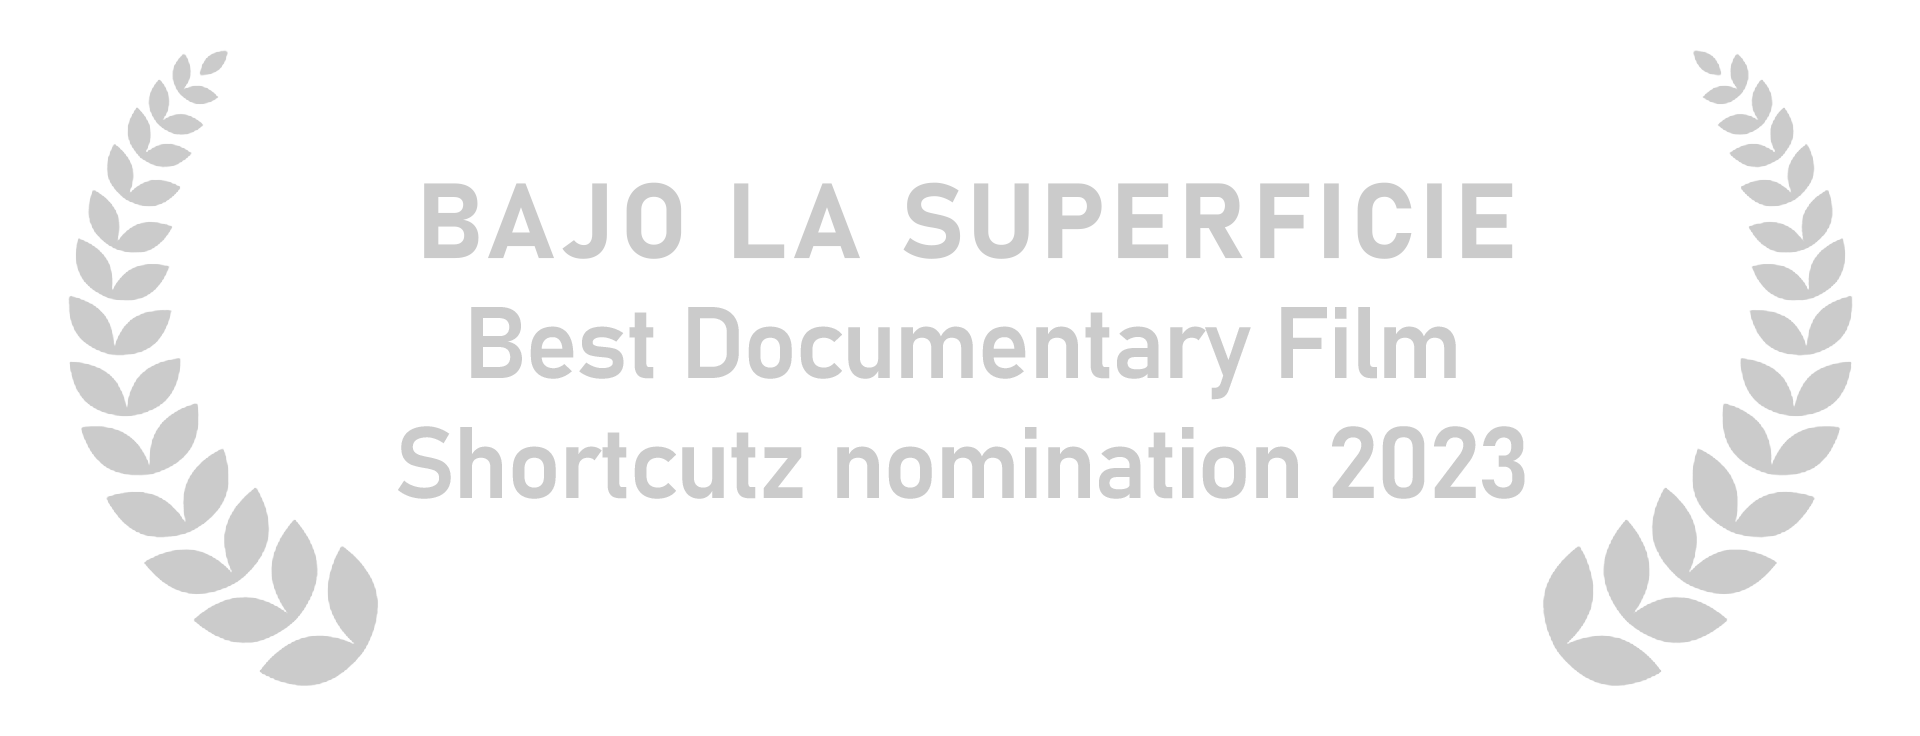 Bajo La Superficie Shortcutz Nomination